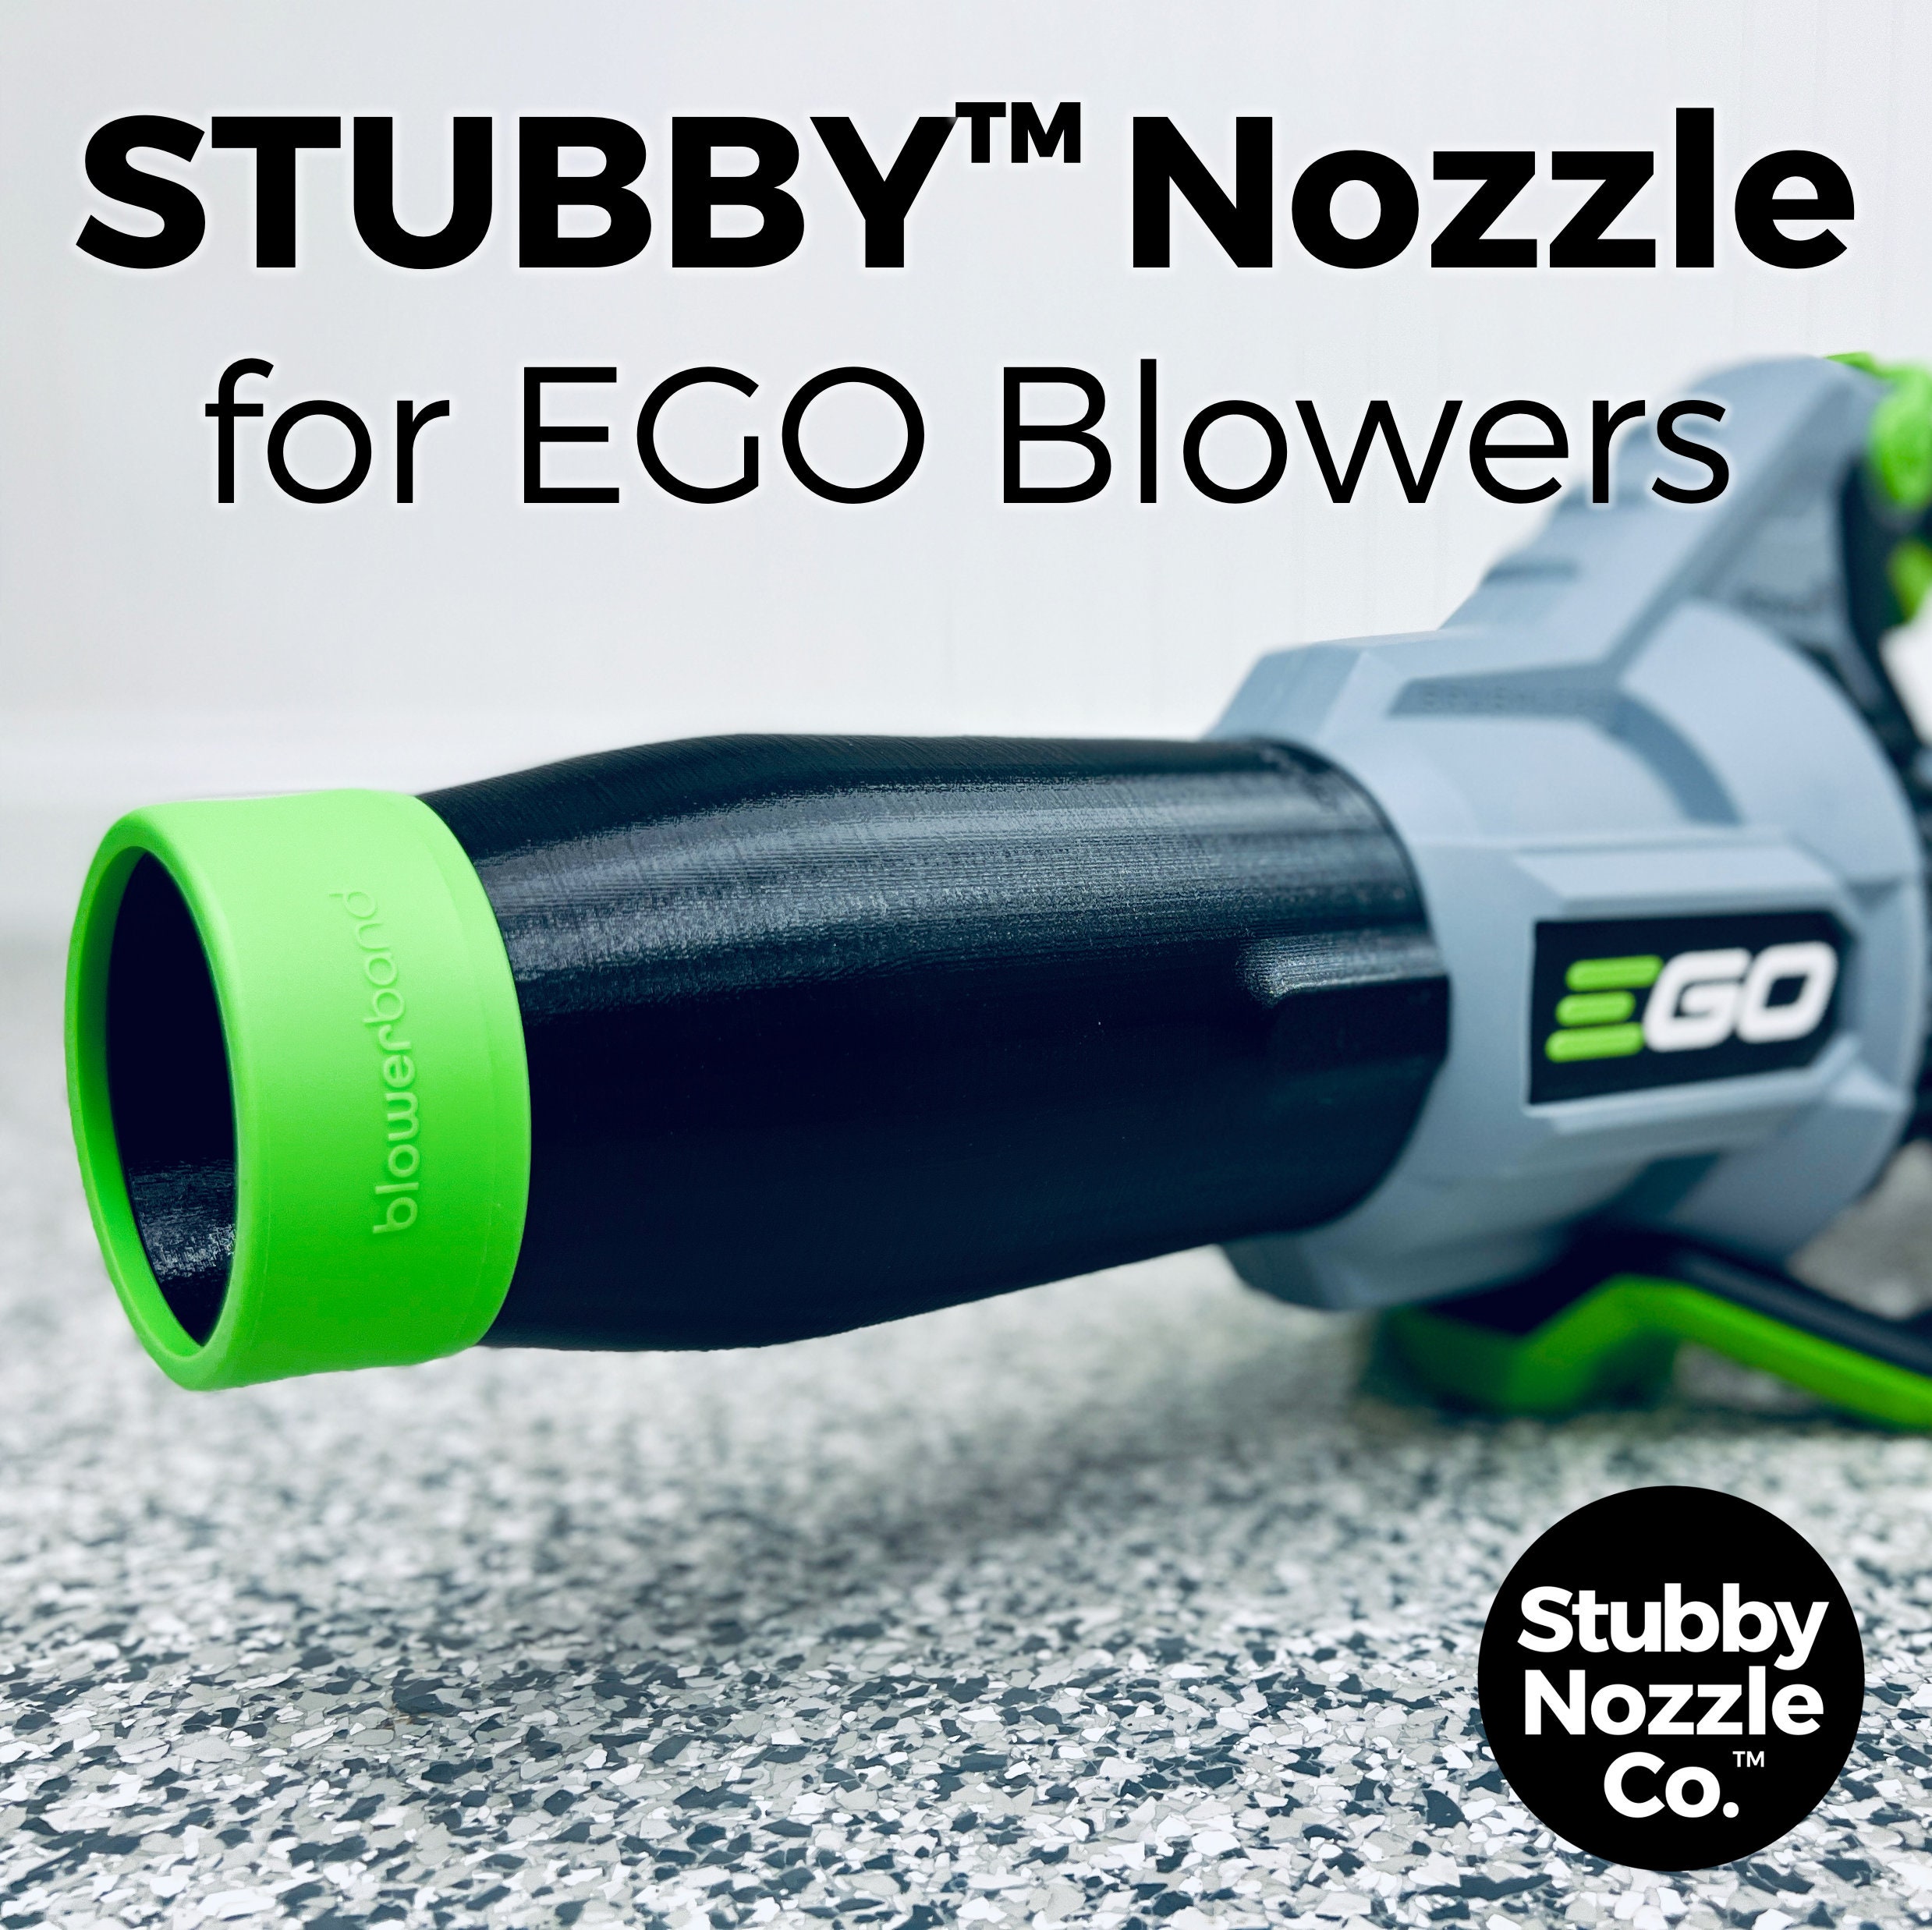 Stubby Nozzle Co. Ugello per asciugatura auto STUBBY™ per soffiatori per  foglie EGO modelli 530, 575, 580, 615, 650, 670 e 765 -  Italia